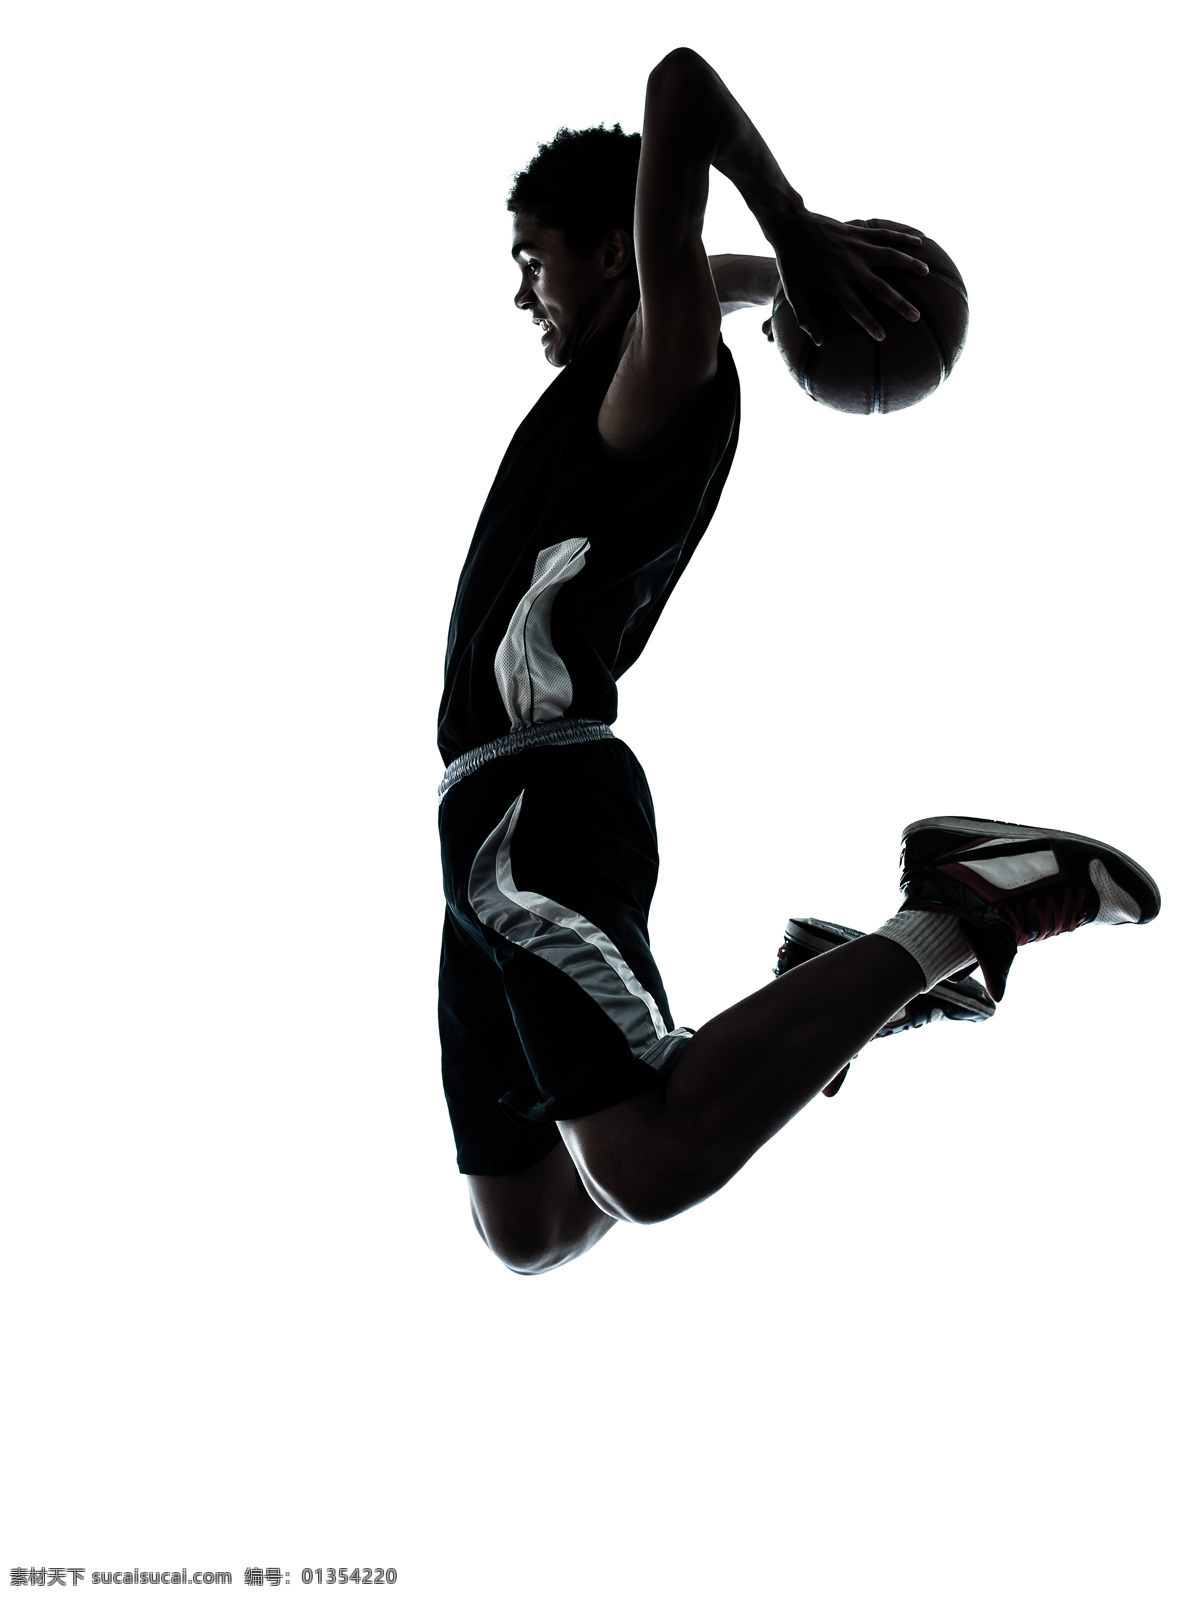 扣篮 篮球 灌篮 篮球场 篮球运动 打篮球 篮板球 篮筐 nba 文化艺术 体育运动